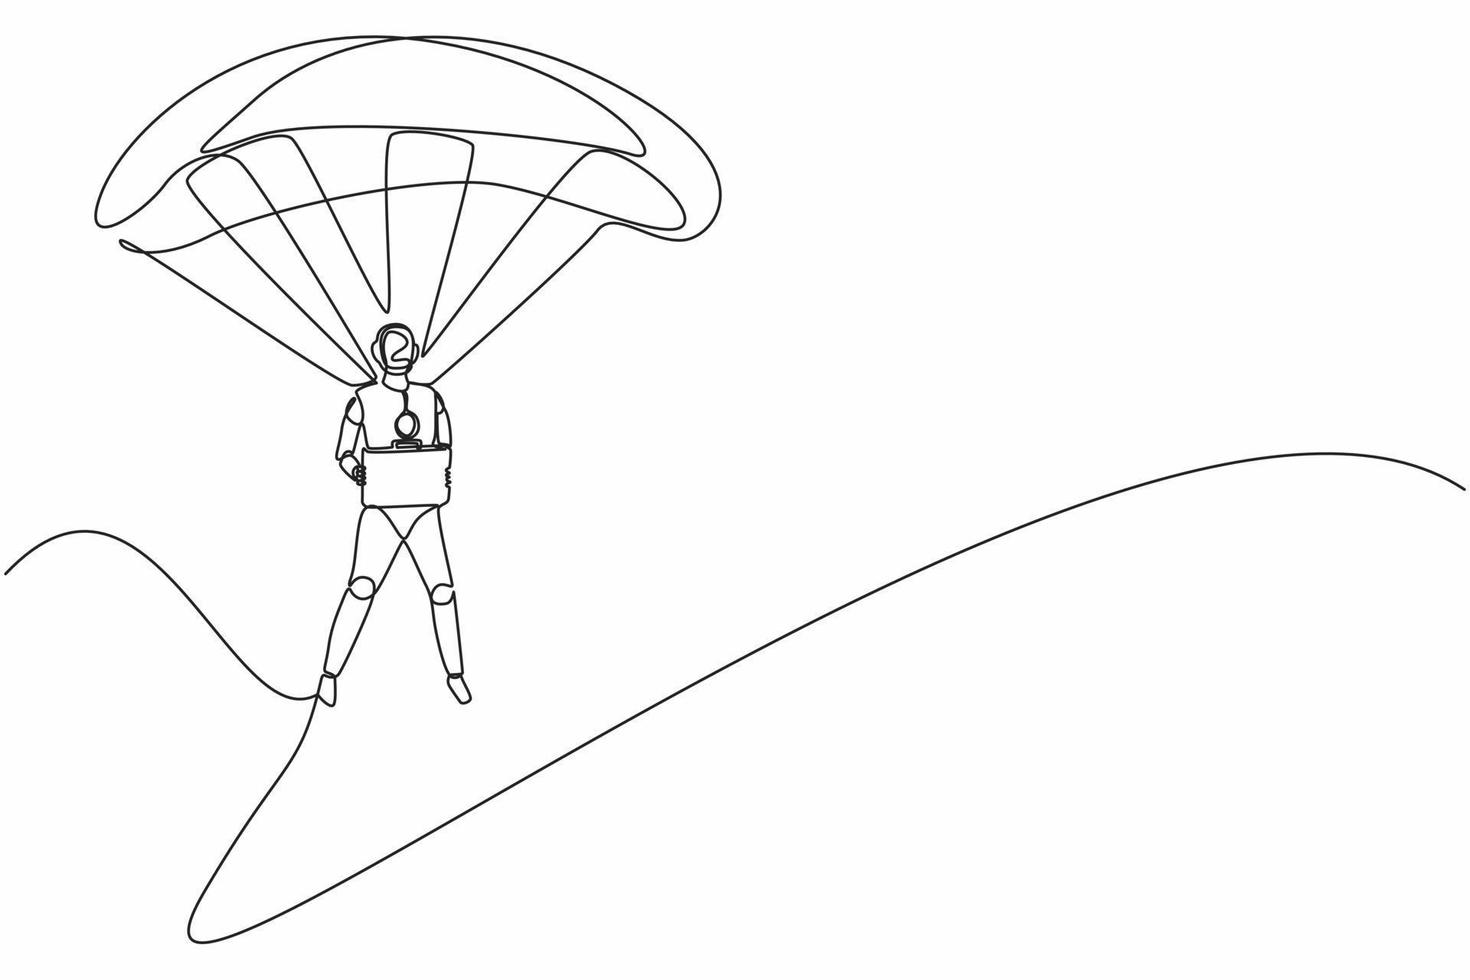 los robots de dibujo de una sola línea saltan con paracaídas y sostienen el maletín. organismo cibernético robot humanoide. futuro concepto de desarrollo de robótica. ilustración de vector gráfico de diseño de línea continua